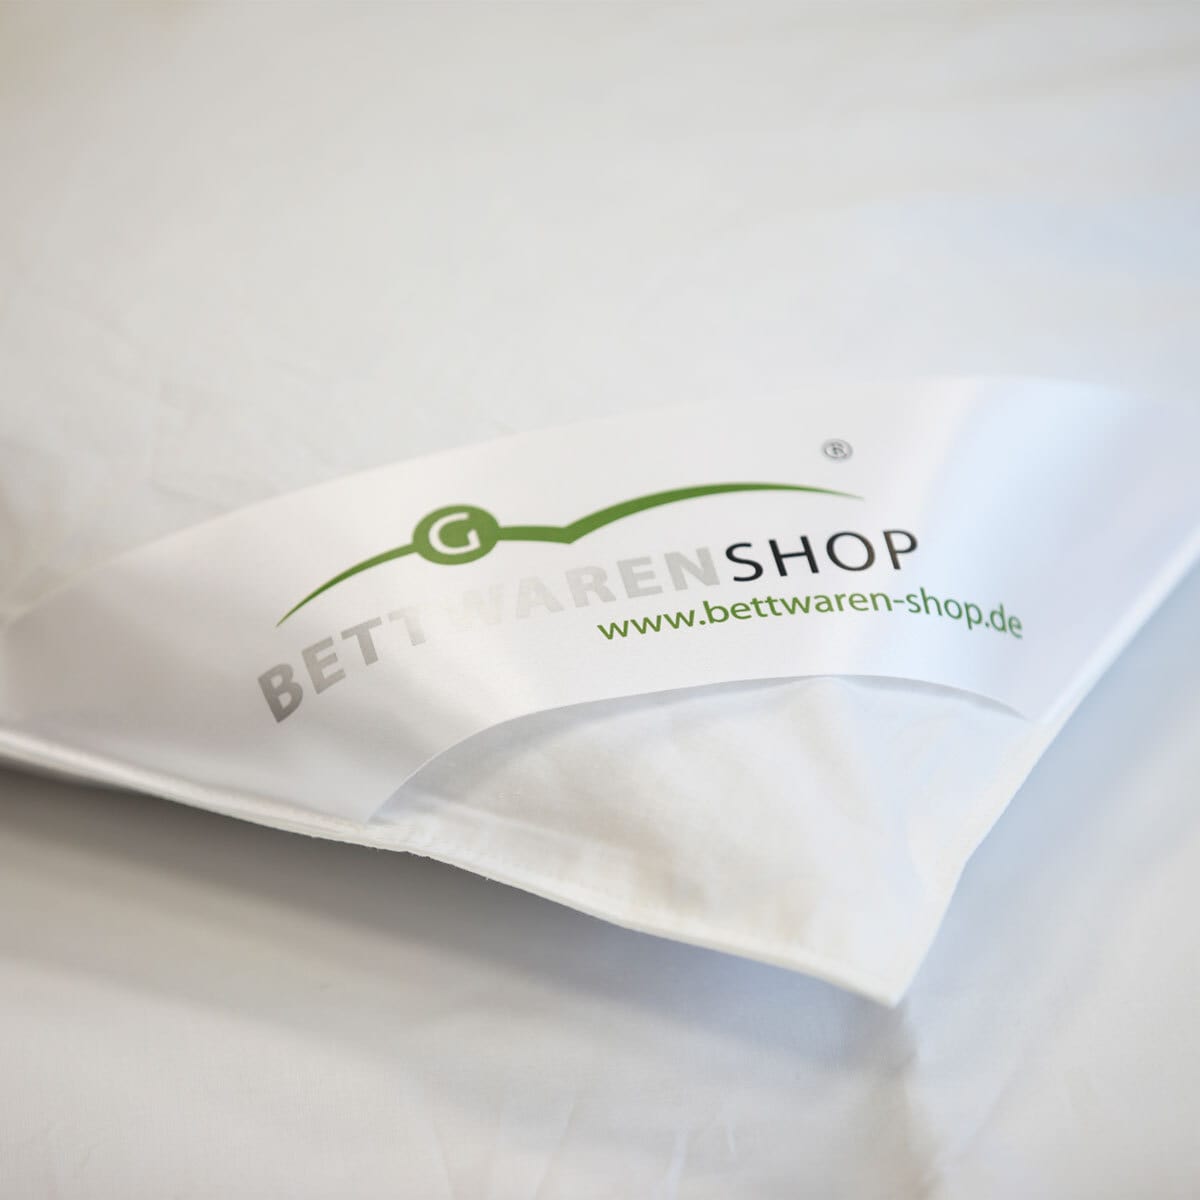 BettwarenShop Daunendecke Polar extra warm, Füllung: 70% Federn, 30% Daunen  günstig online kaufen bei Bettwaren Shop